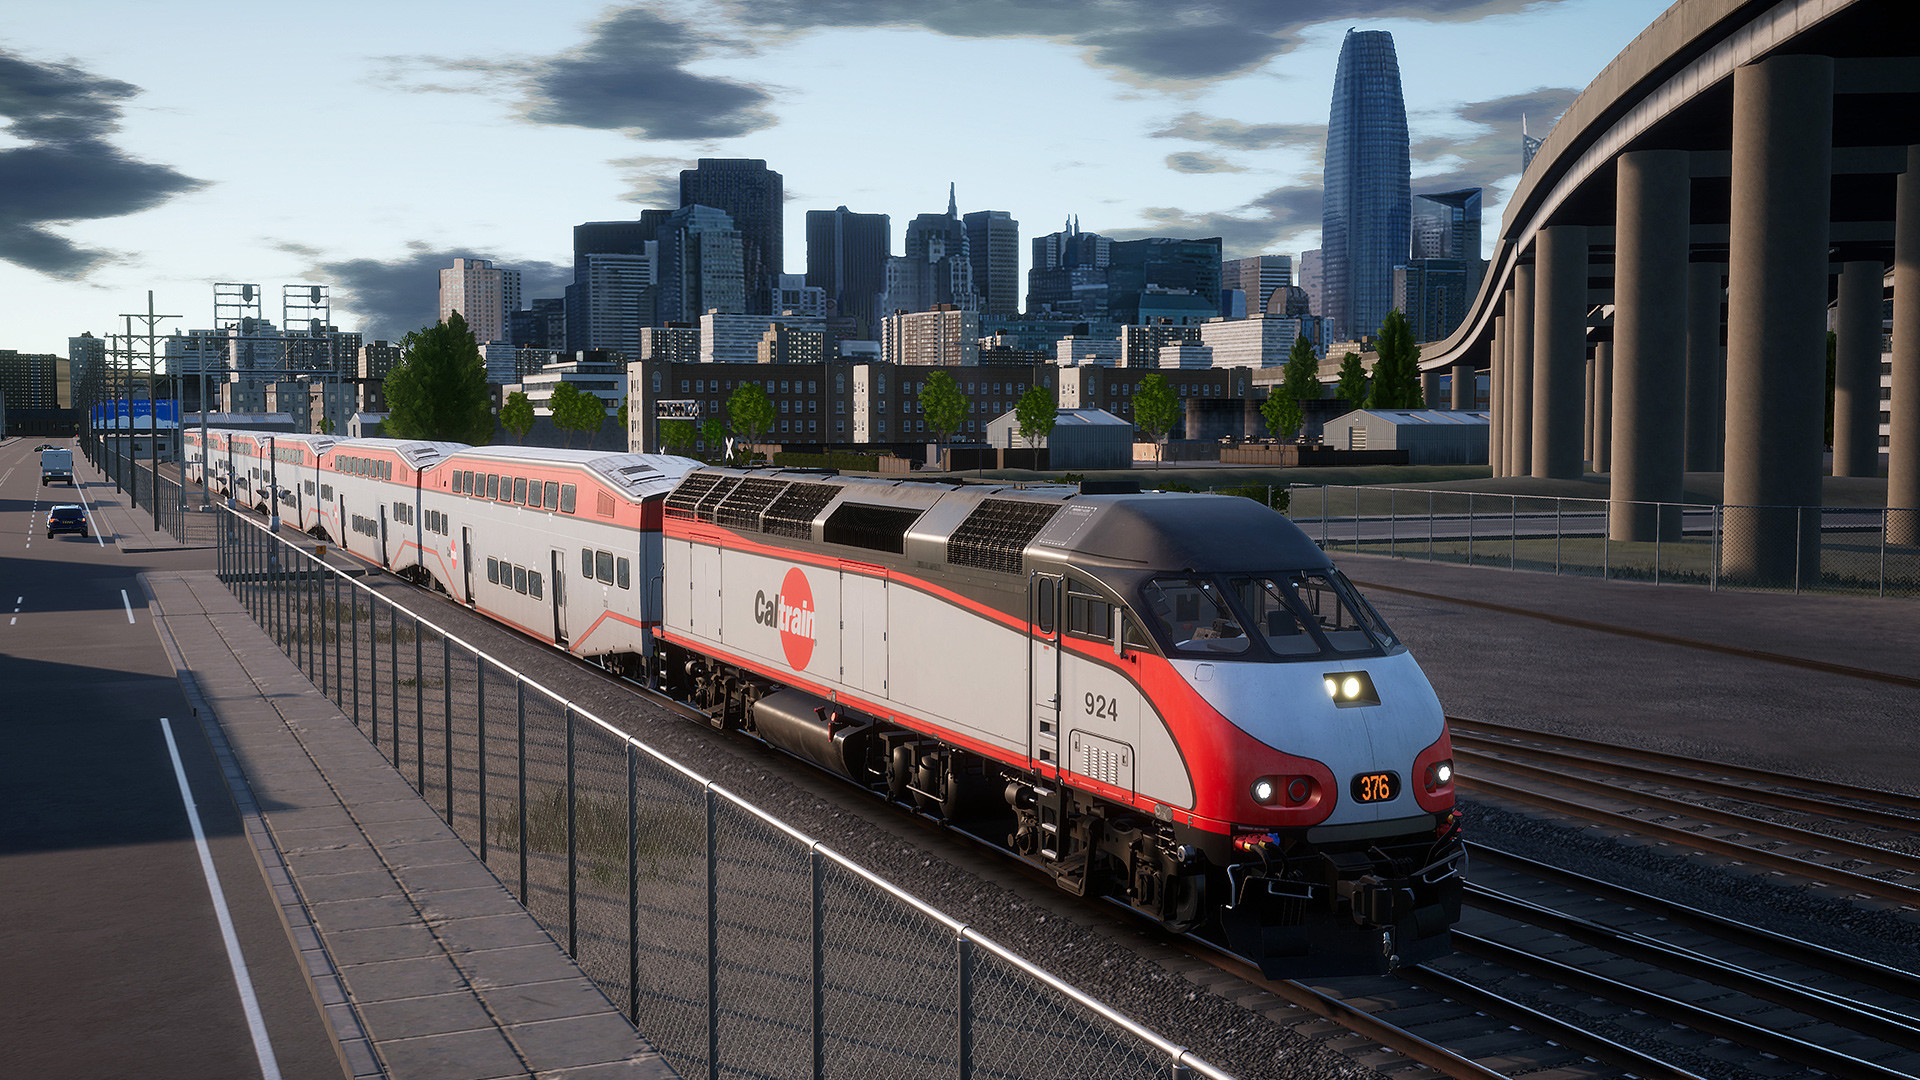 Train Sim World - Caltrain MP36PH-3C Baby Bullet Loco Add-On DLC Steam CD Key 2.42 $